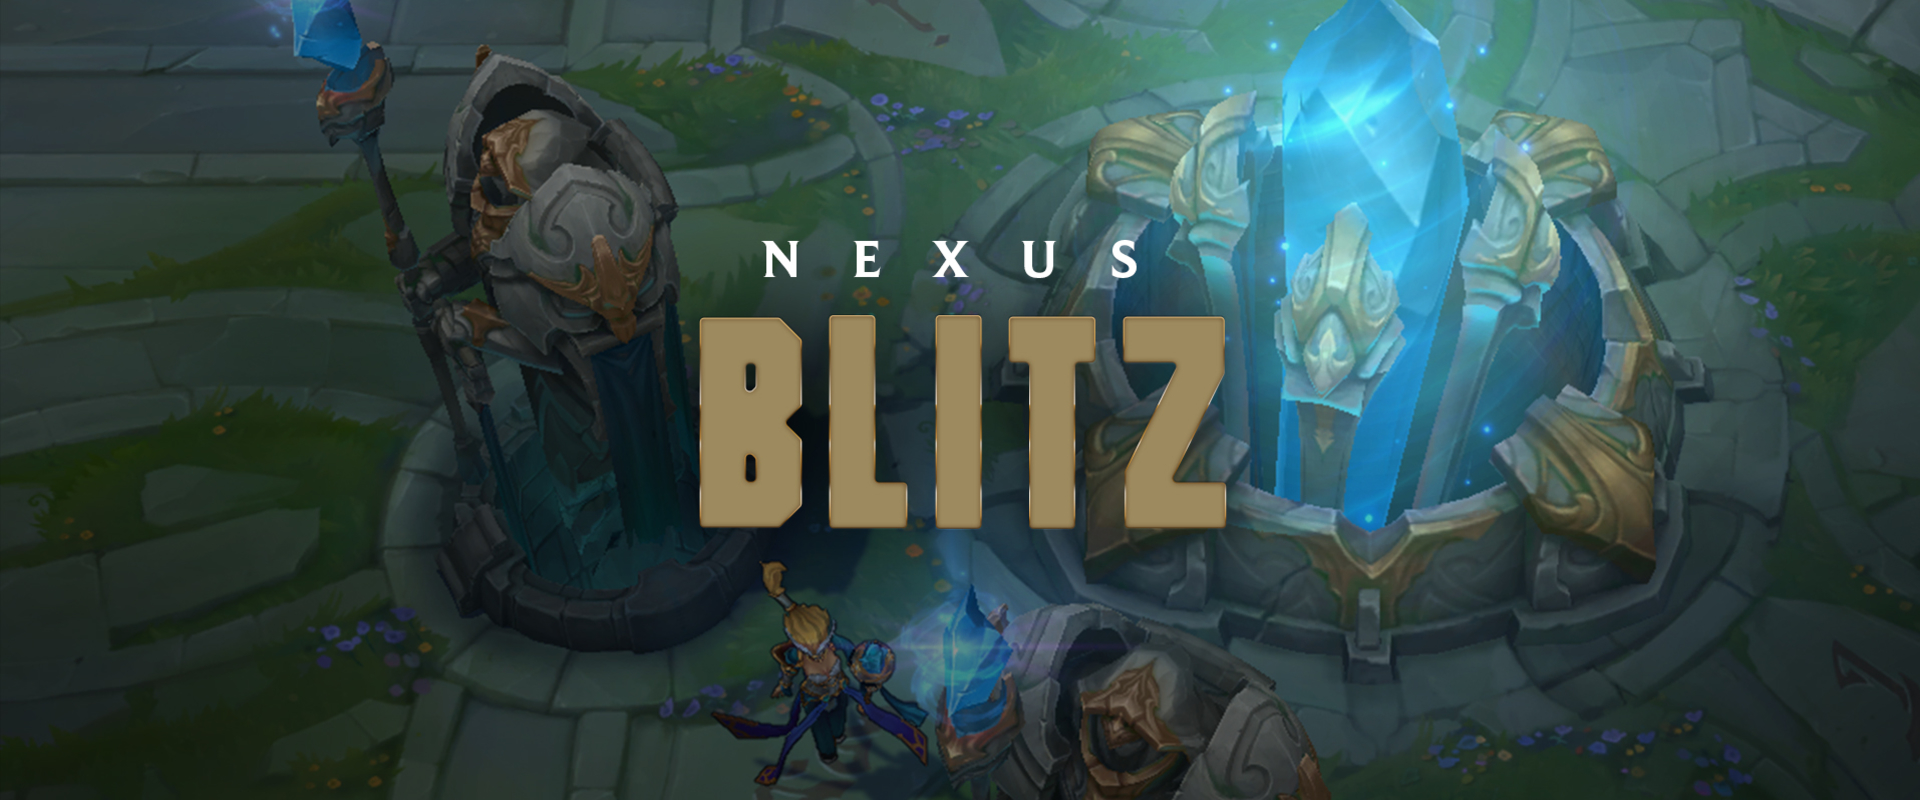 Battle Royale elemeket is idéző új játékmód lesz a Nexus Blitz!